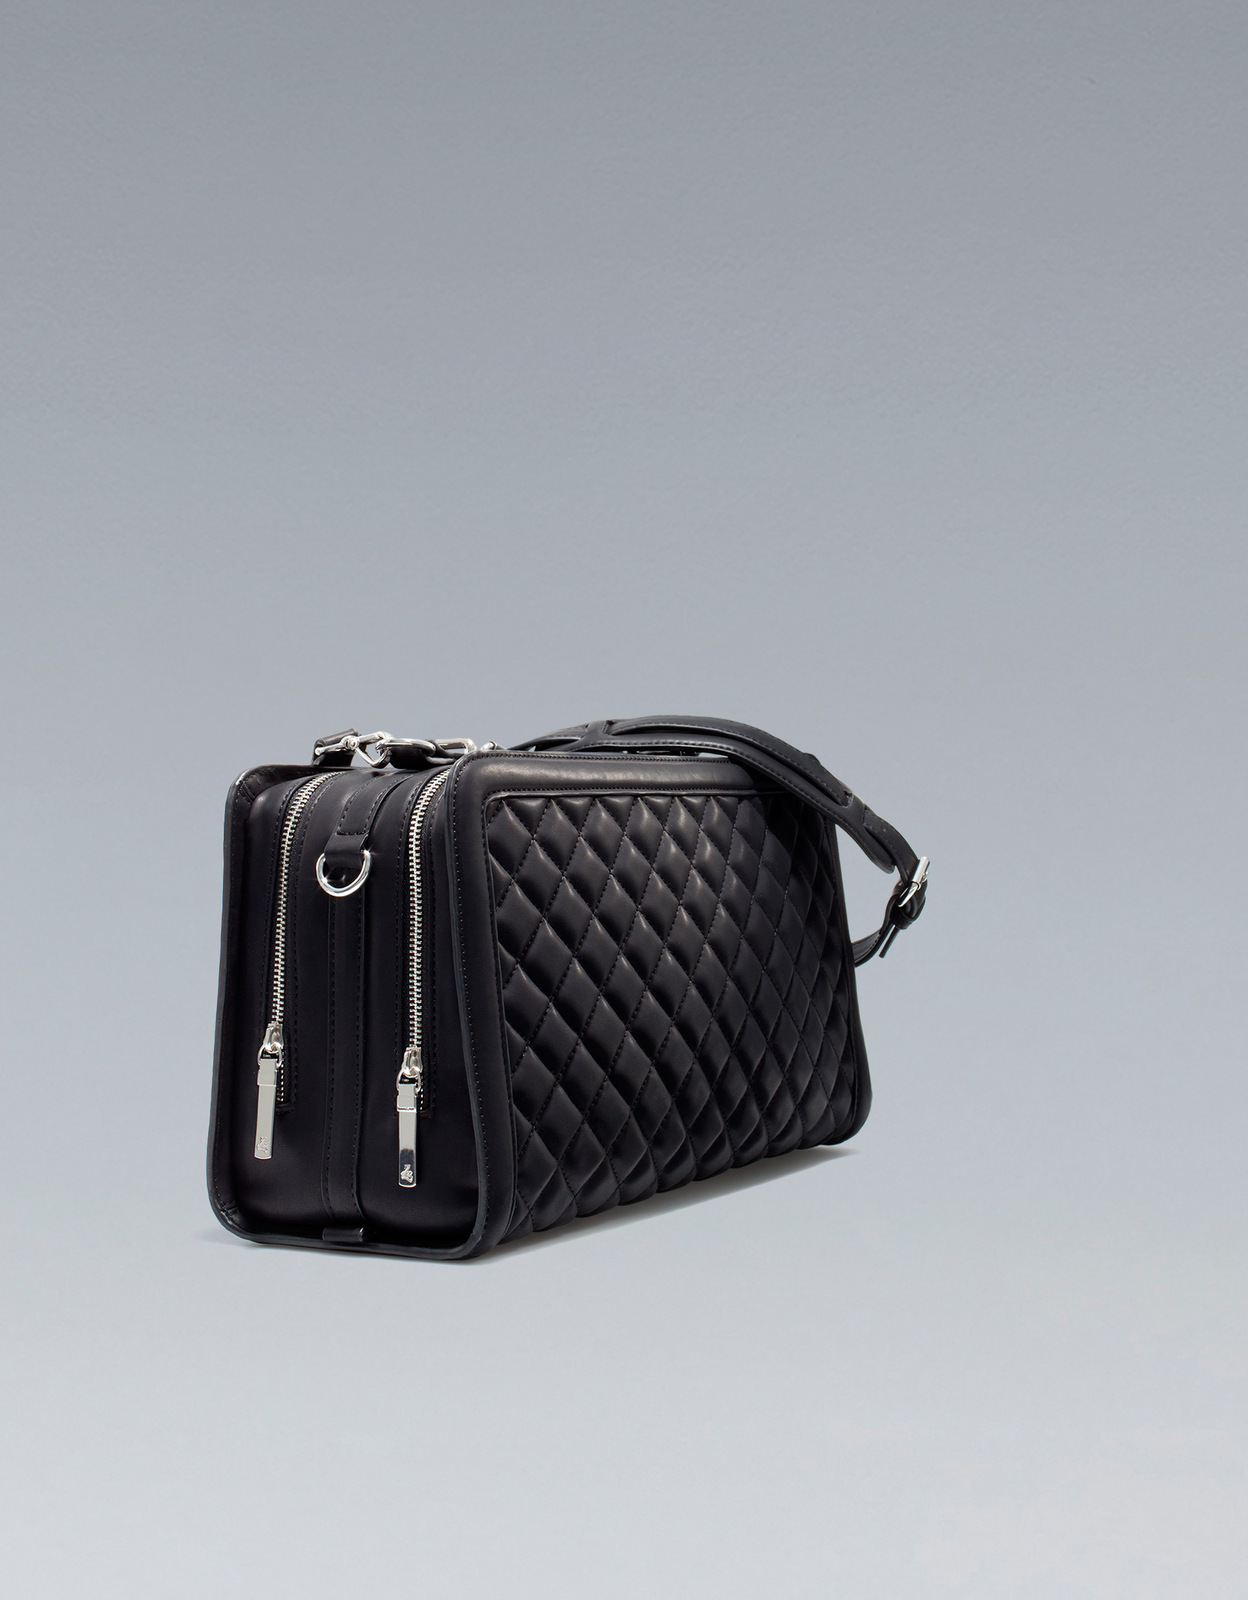 Zara fekete steppelt táska  2012 fotója